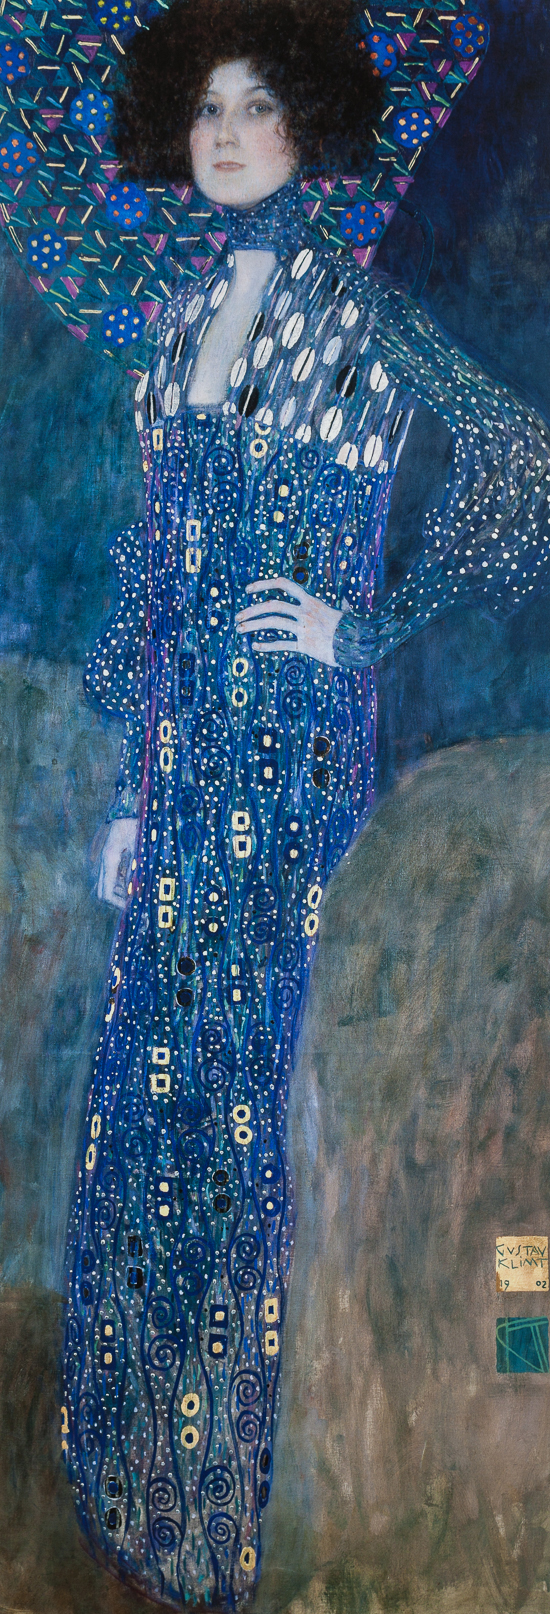 Gustav Klimt poster print, Emilie Flöge